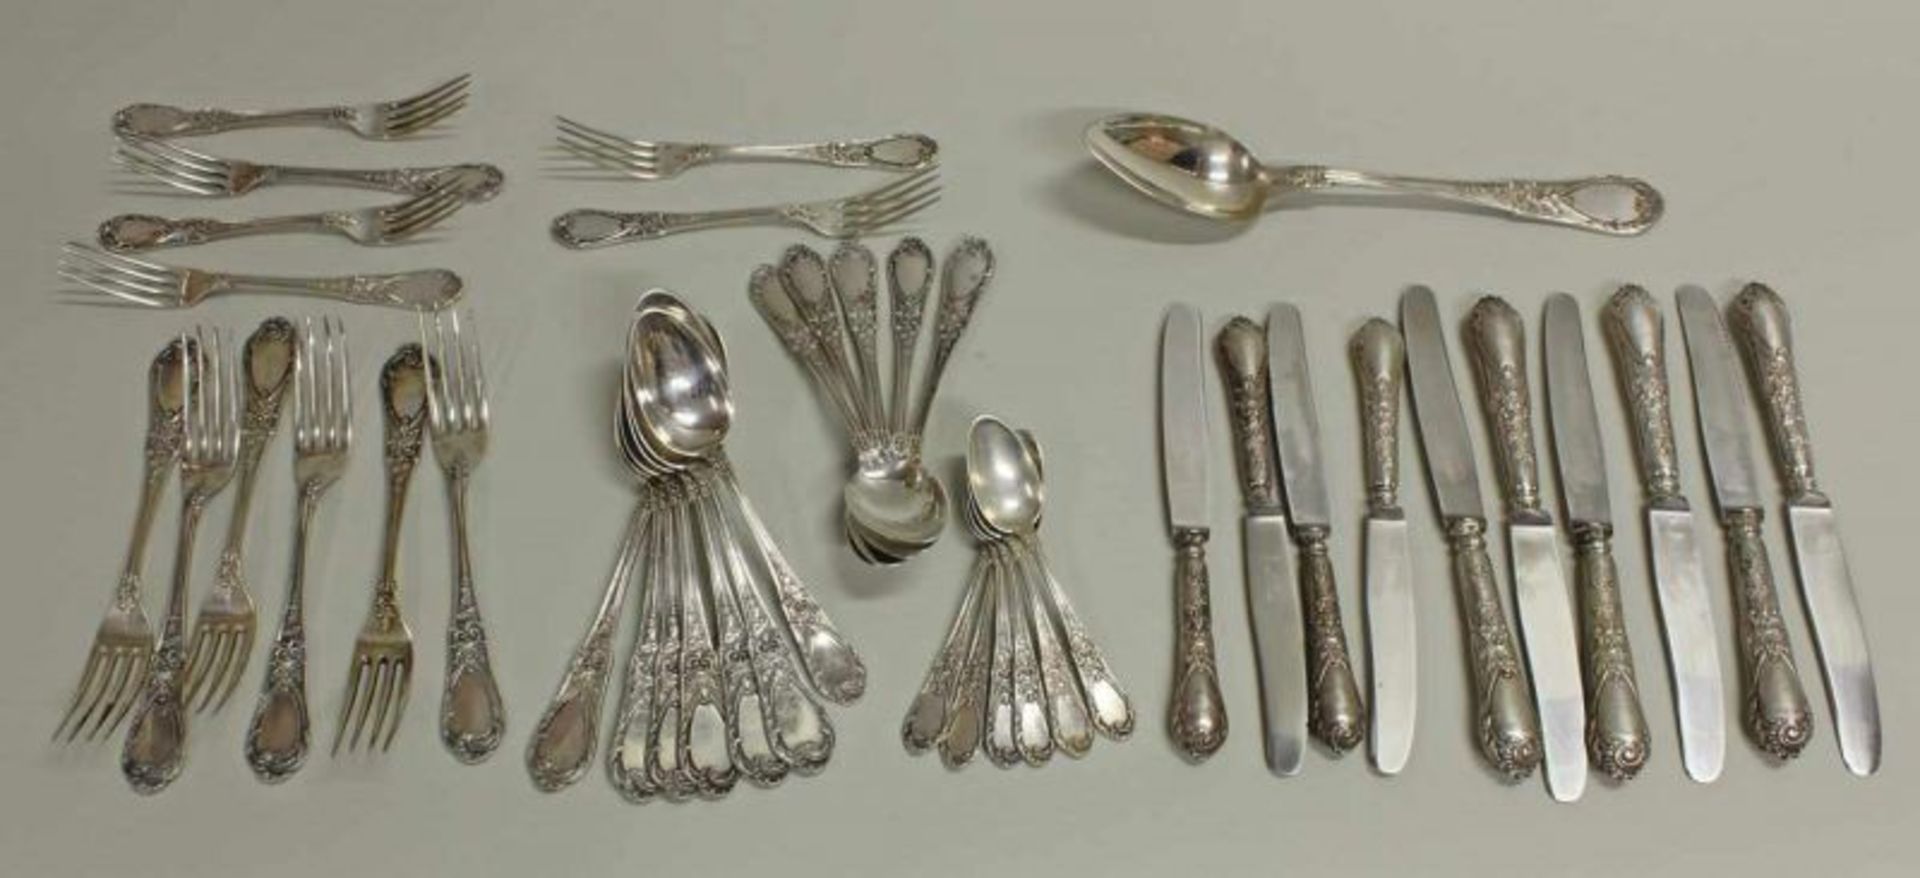 Besteck, Silber 800, Rokokoform: 6 Vorspeisegabeln, 4 Vorspeisemesser, 6 Tafelgabeln, 6 Tafelmesser,